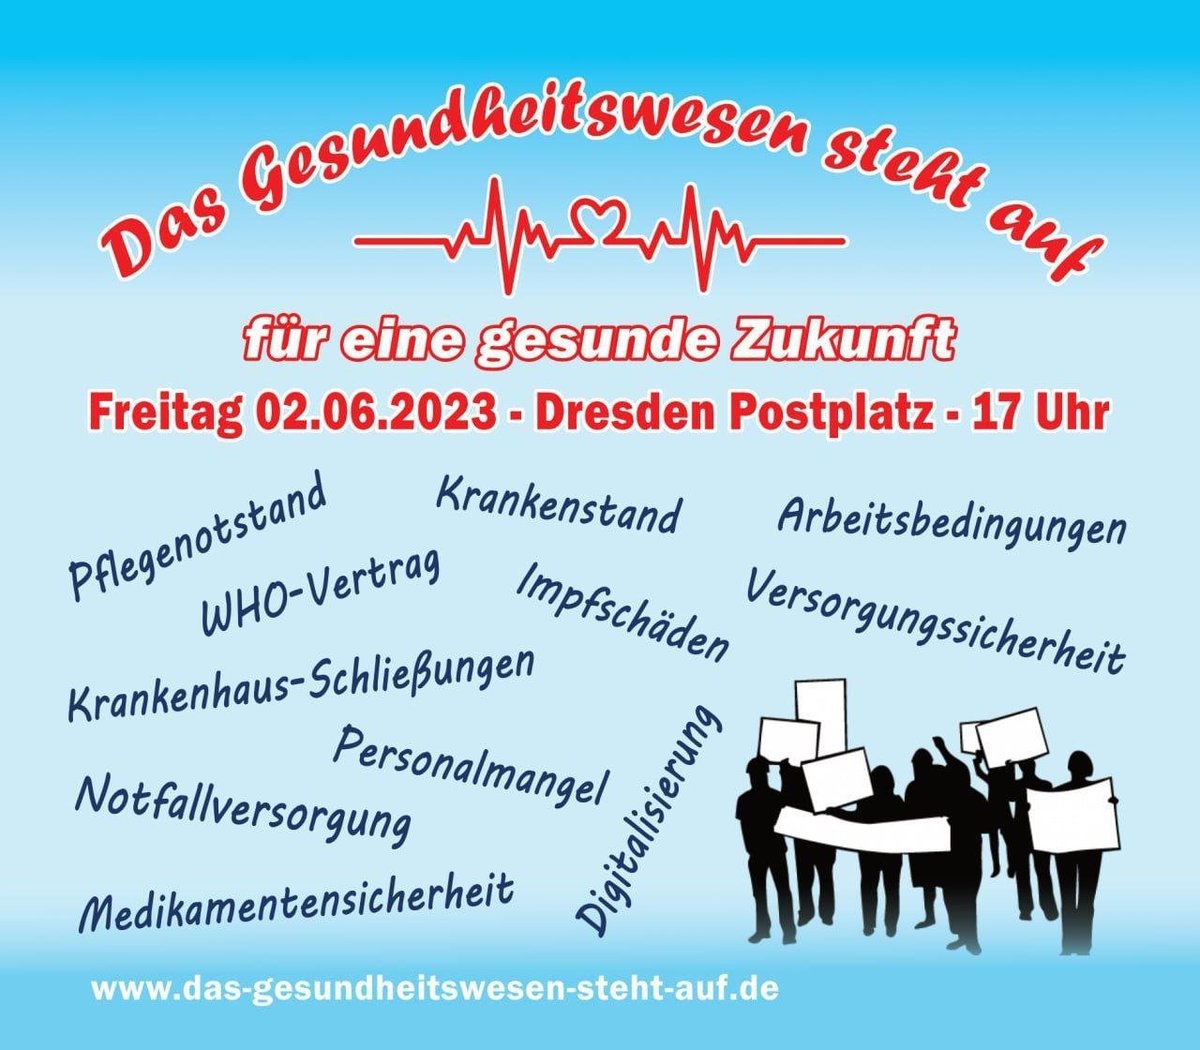 #Dresden (#Sachsen) #DD0206
#Demo #Demonstration #Protest 

Das #Gesundheitswesen steht auf - für eine gesunde #Zukunft 

ℹ️das-gesundheitswesen-steht-auf.deℹ️